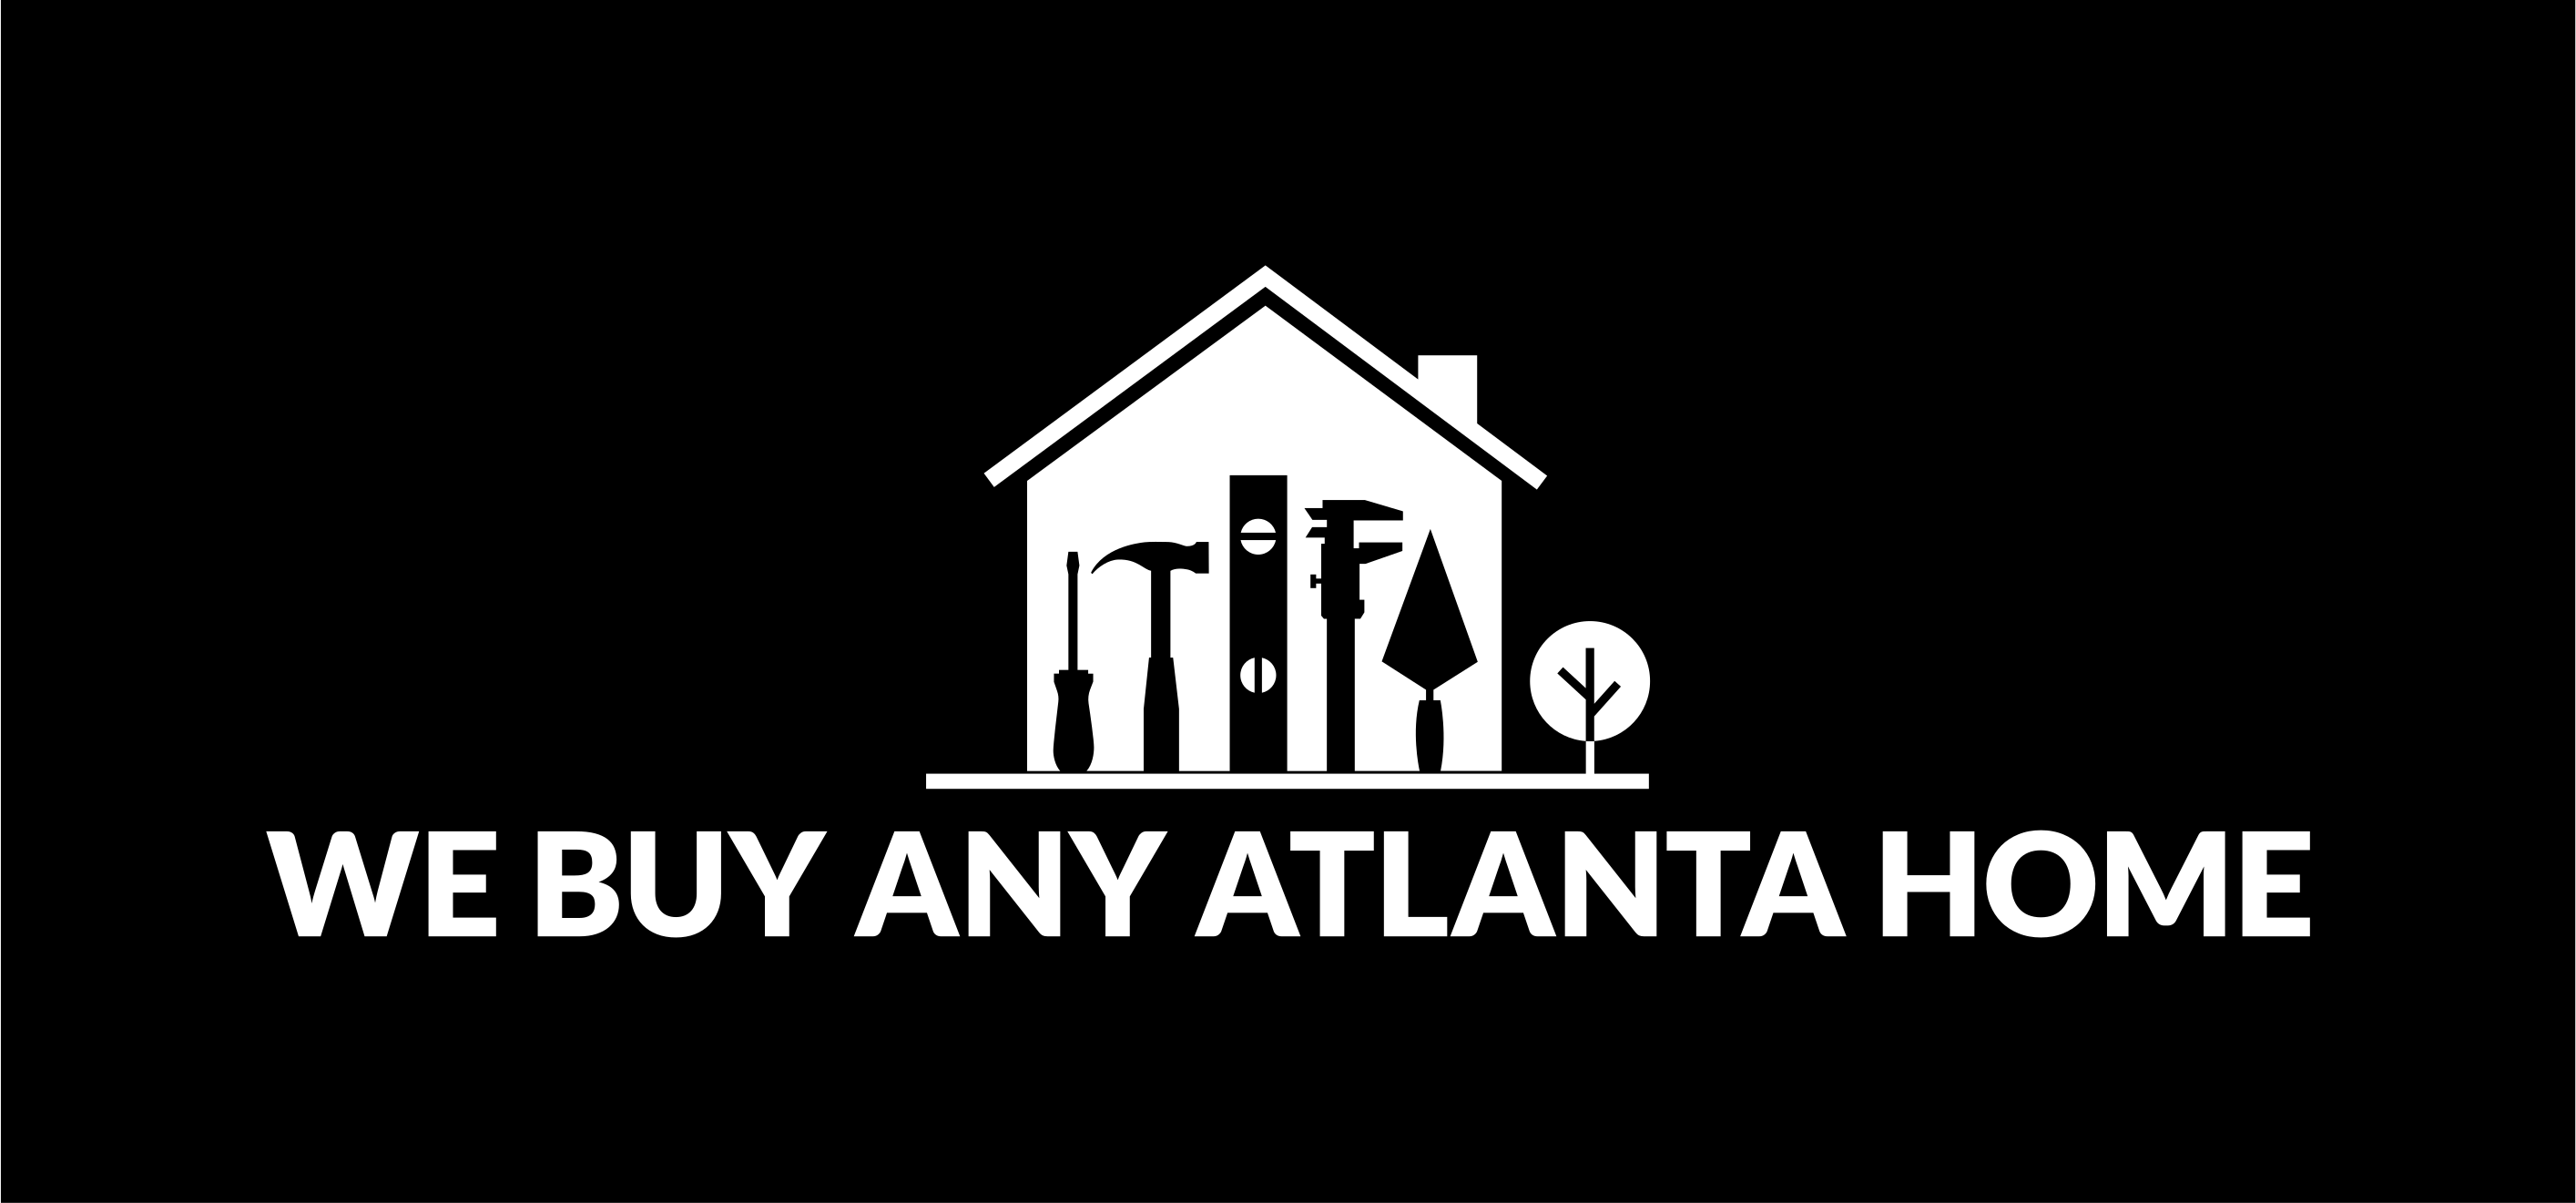 We Buy Any Atlanta Home logo